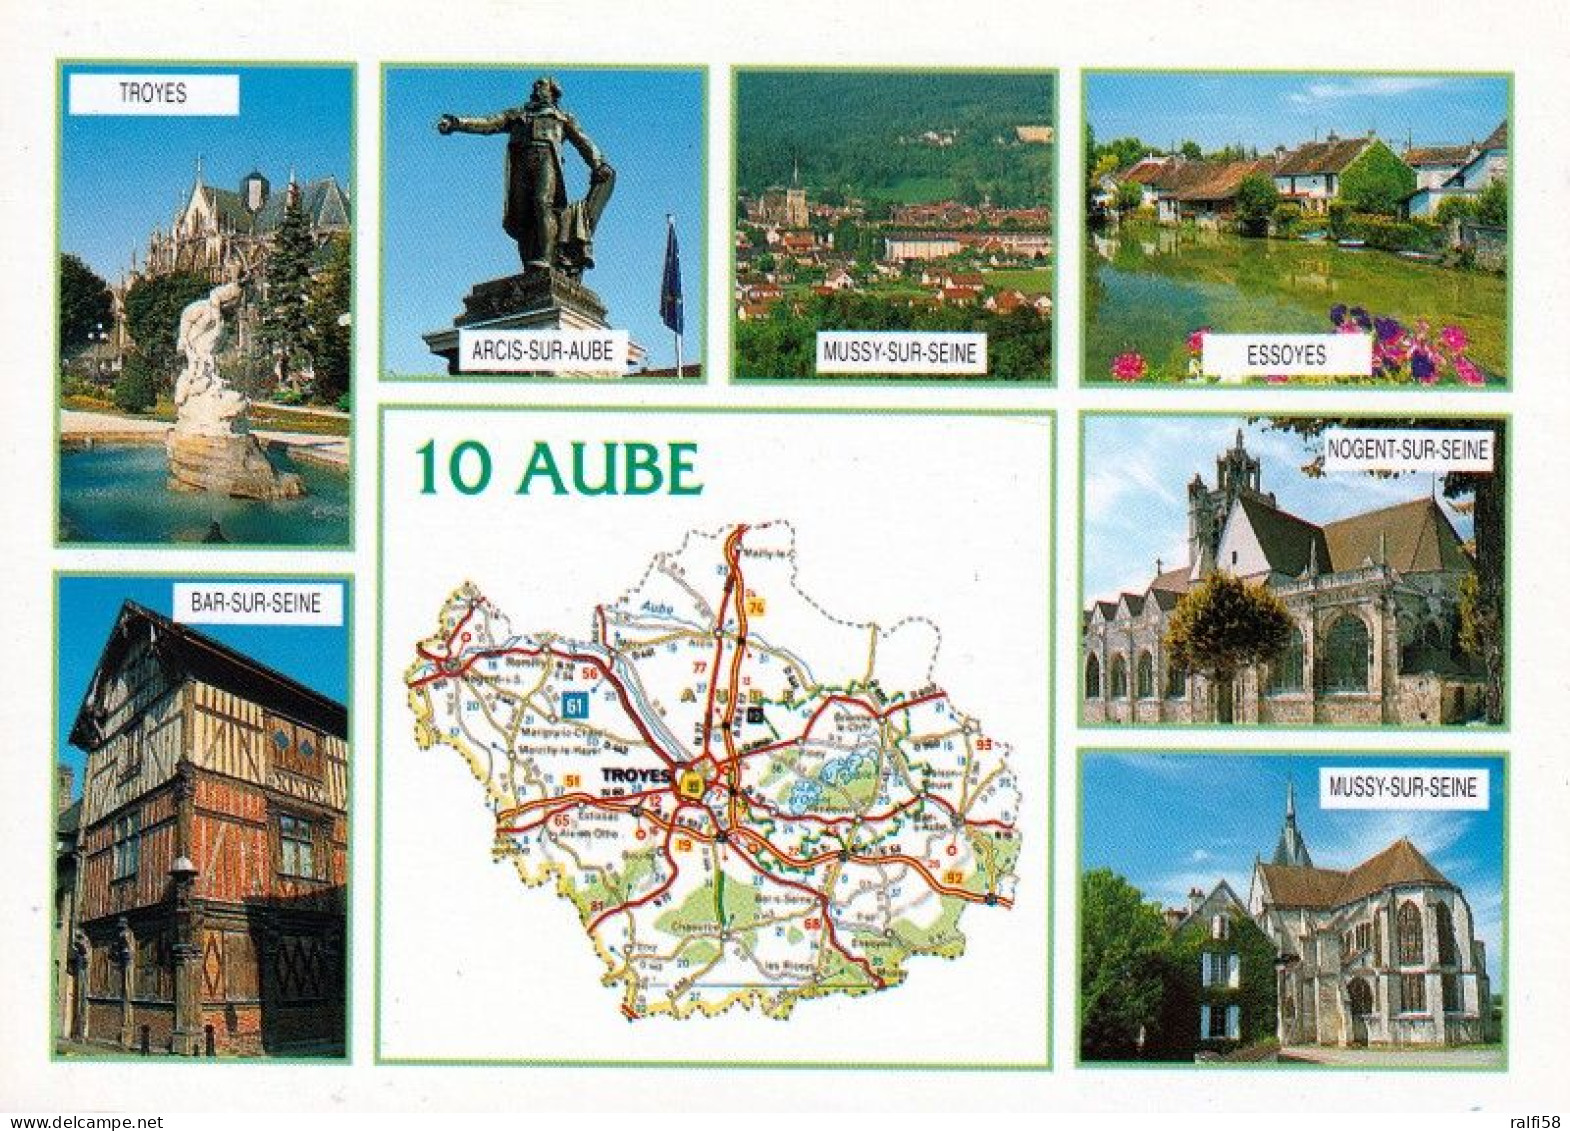 1 Map Of France * 1 Ansichtskarte Mit Der Landkarte - Département Aube - Ordnungsnummer 10 * - Landkarten